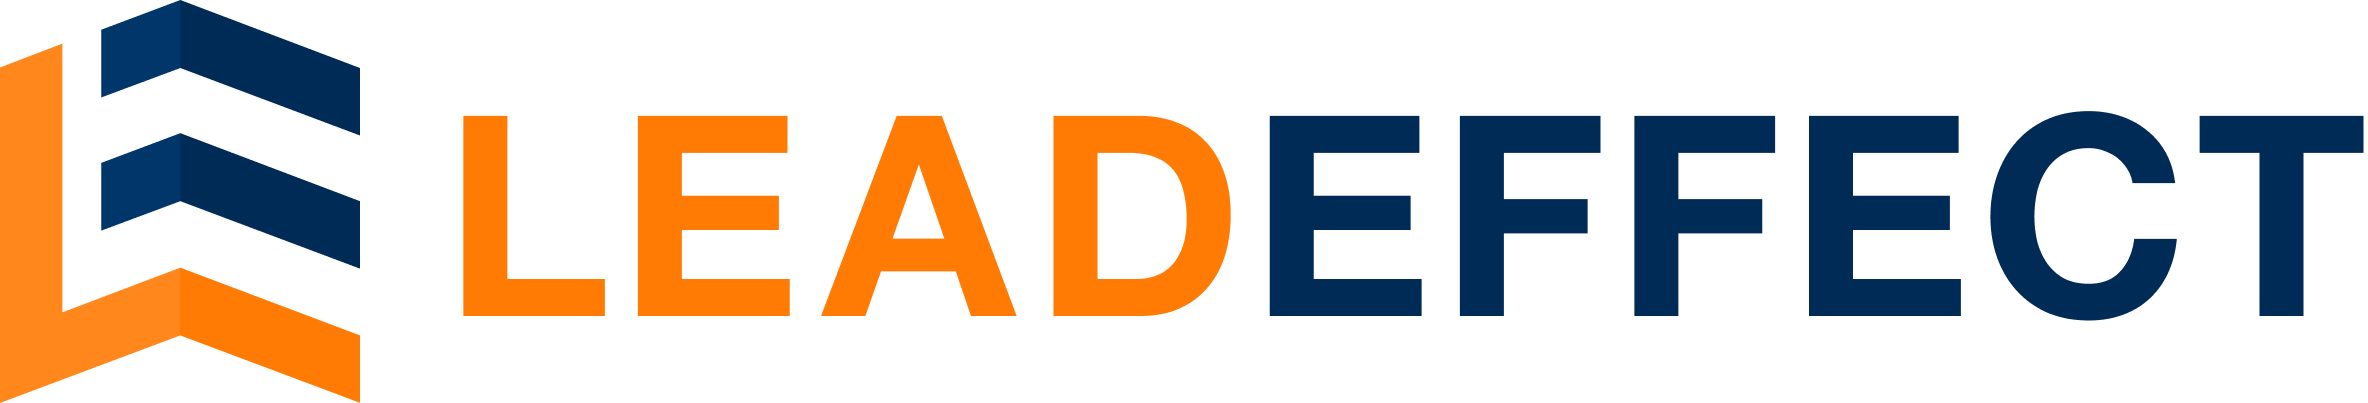 Leadeffect Logo